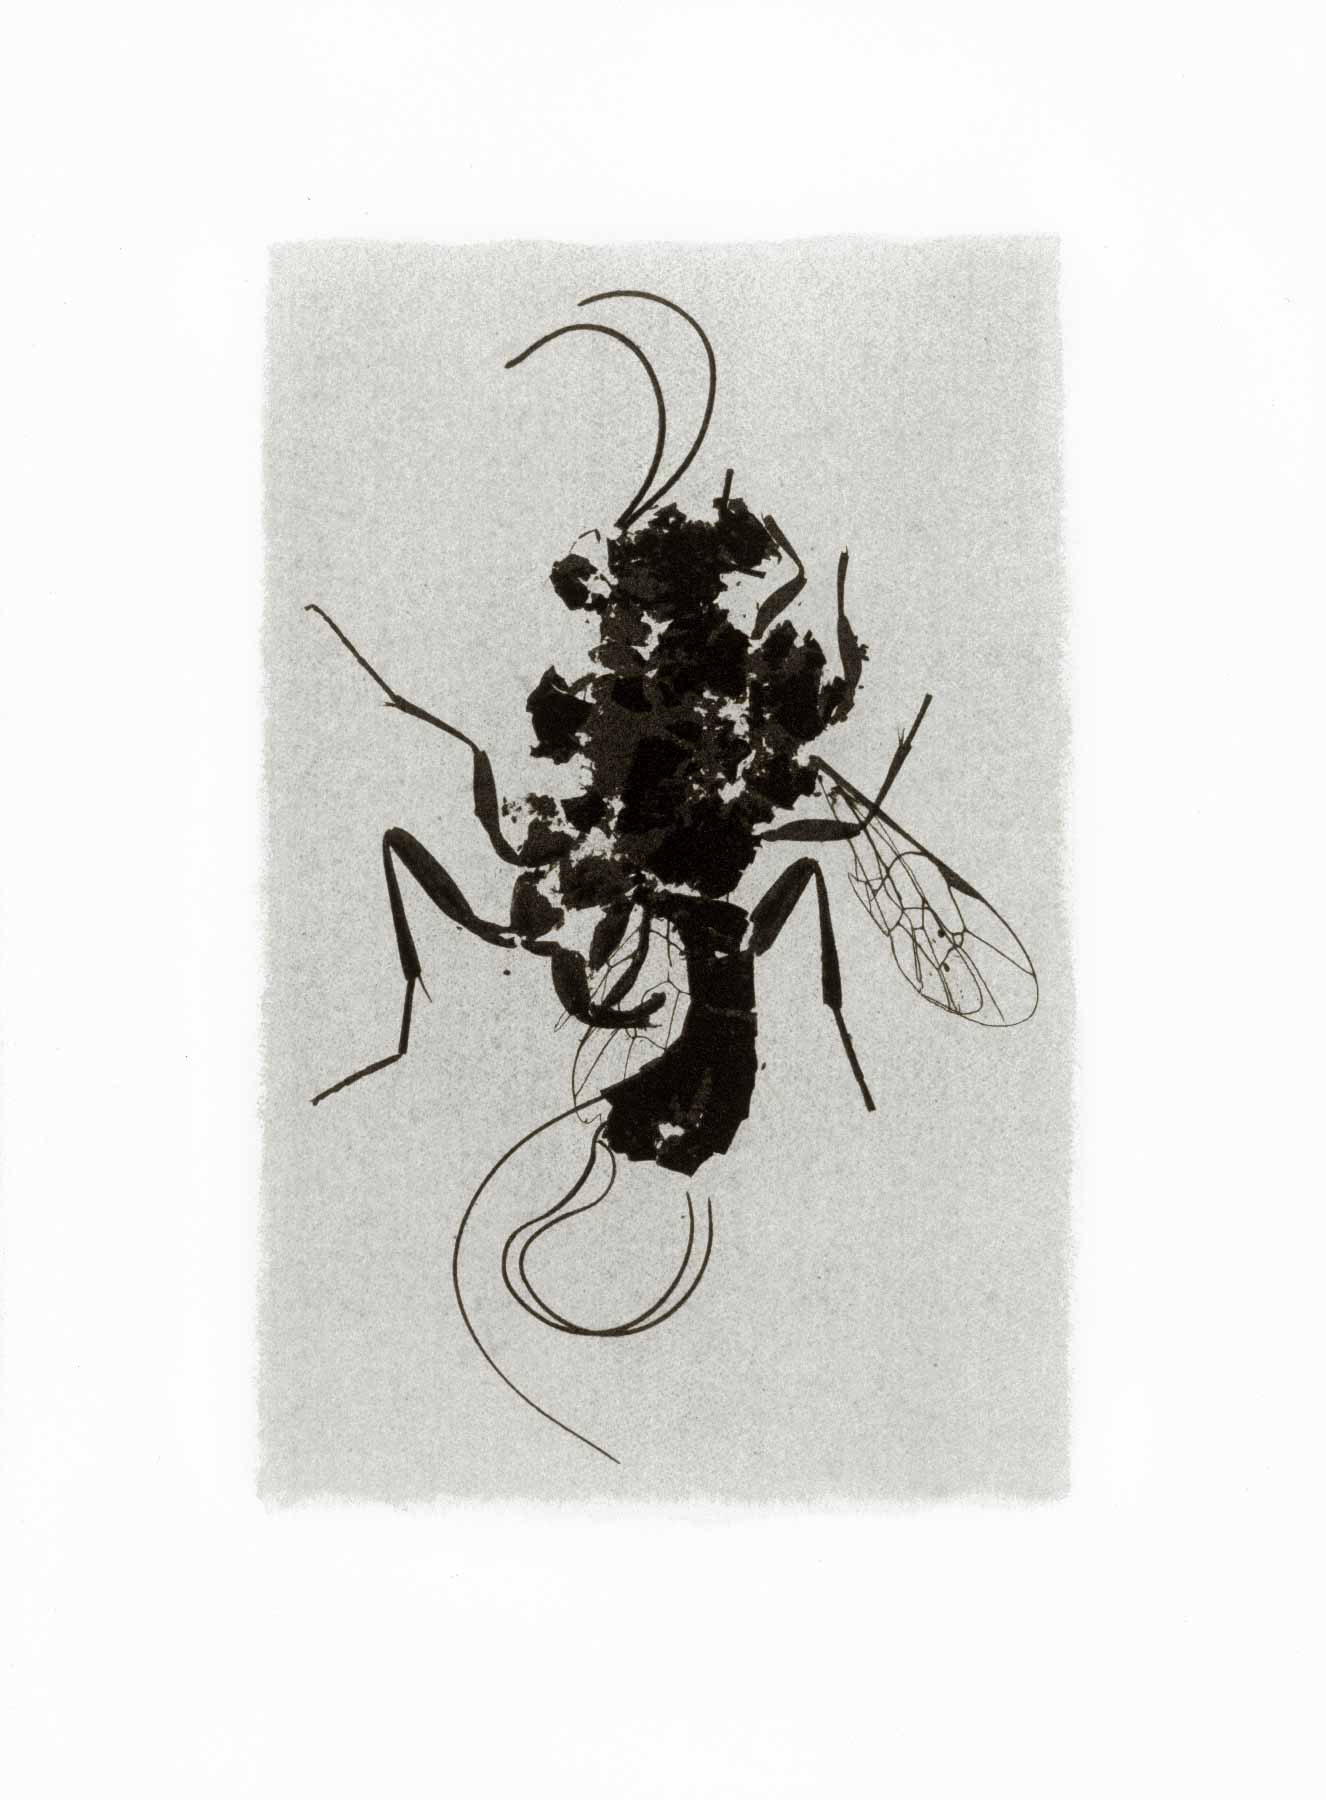 Gum bichromate insect - Ichneumon 1997